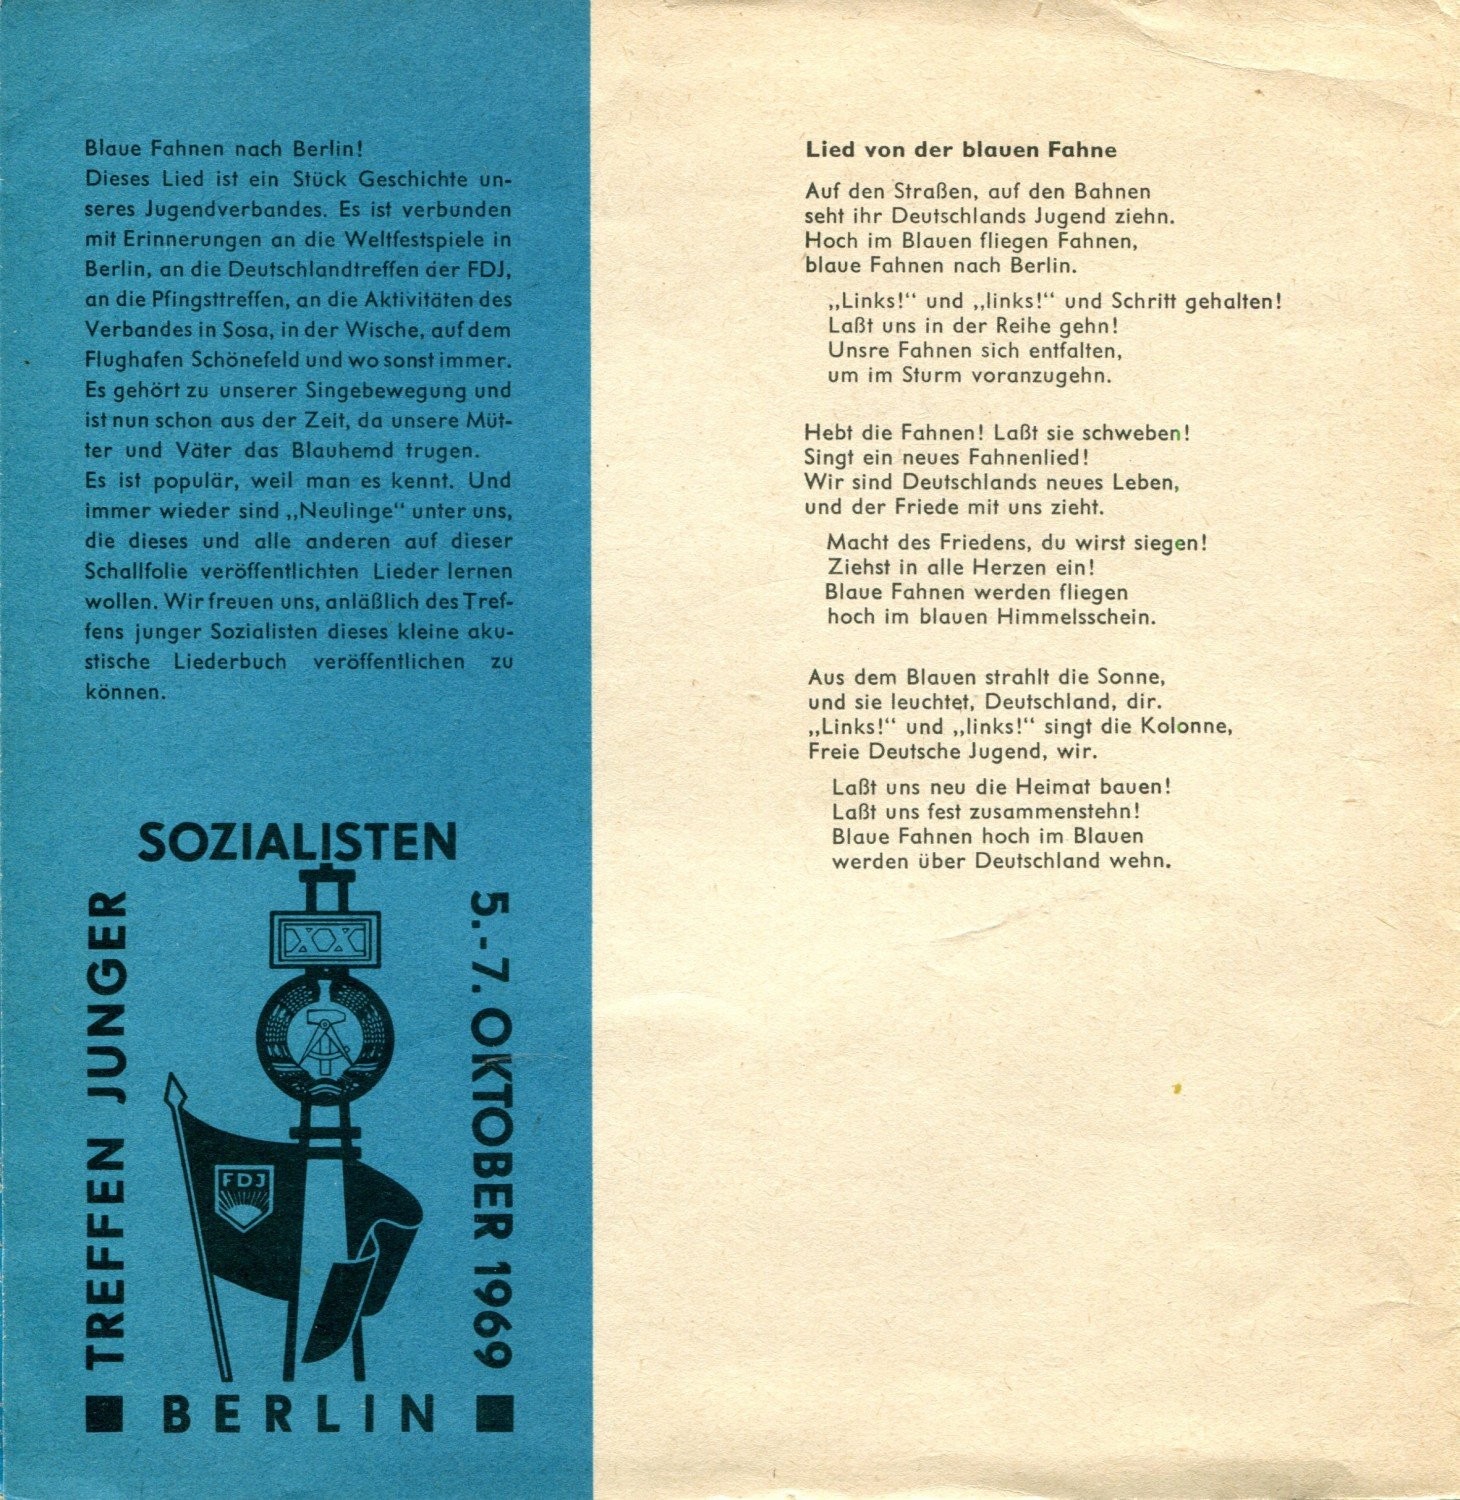 Zum Treffen junger Sozialisten 1969 / Немецкие молодежные политические песни